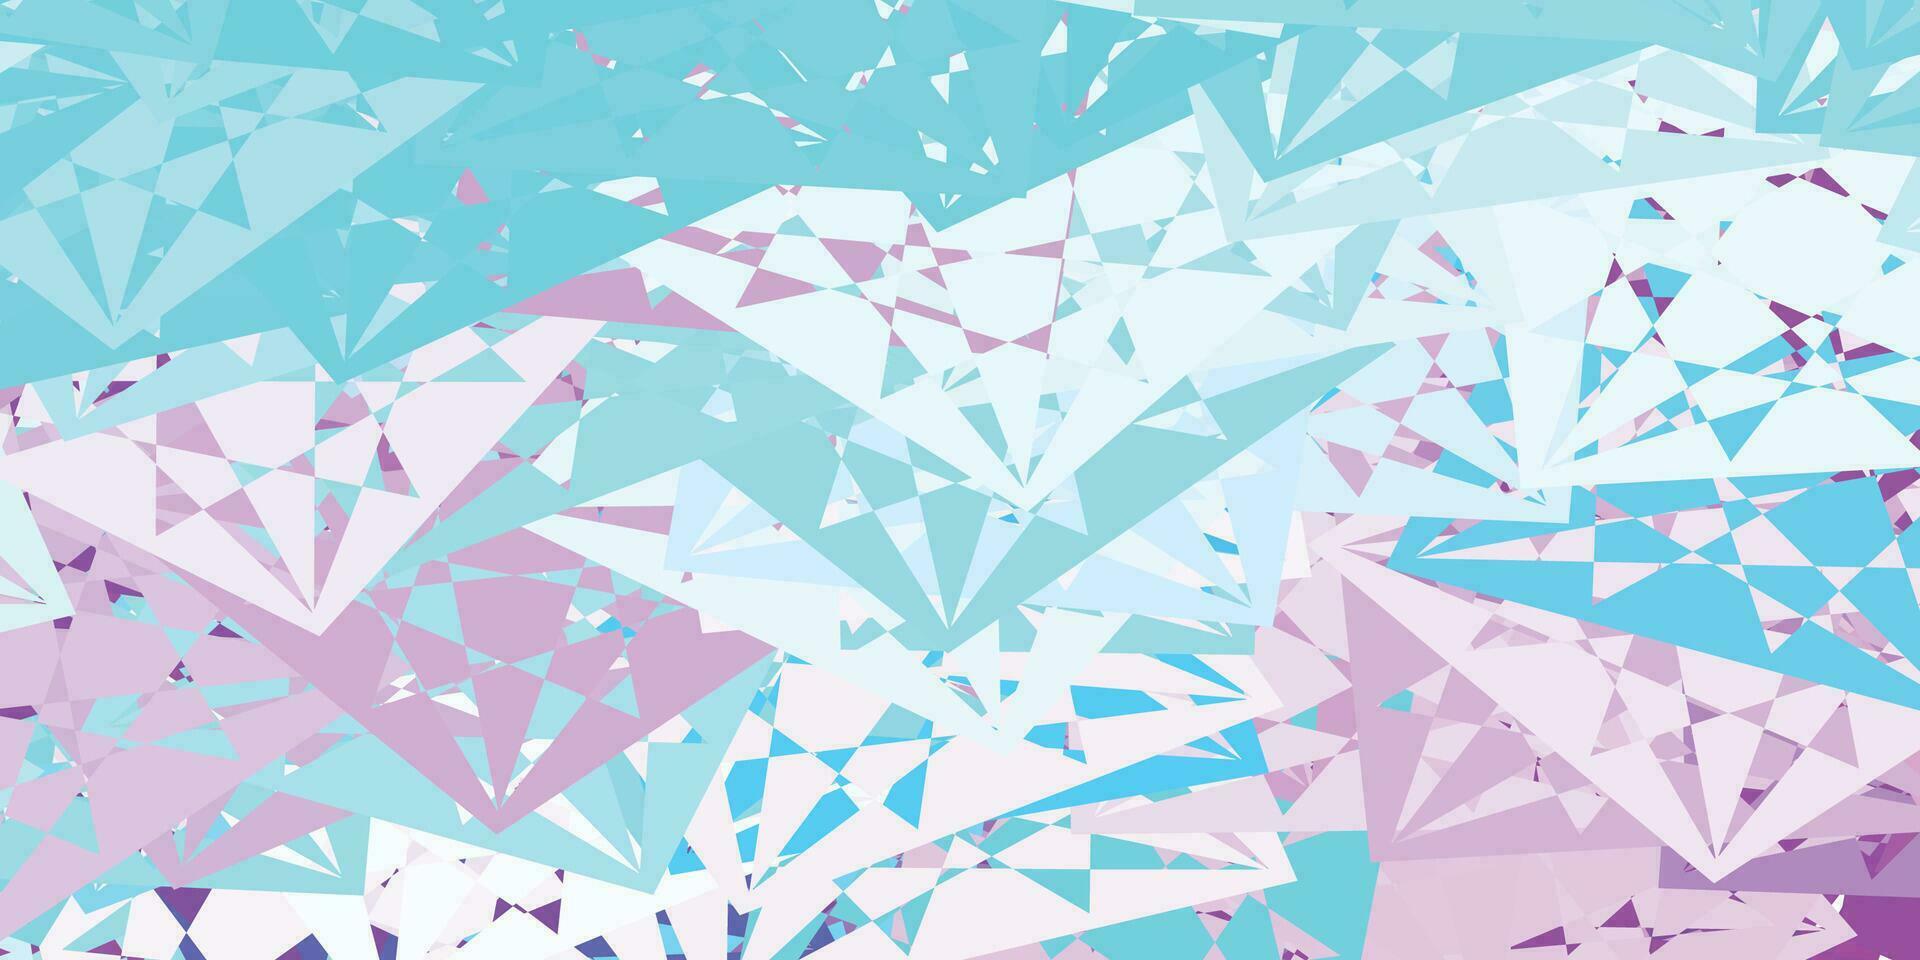 sfondo vettoriale rosa chiaro, blu con forme poligonali.